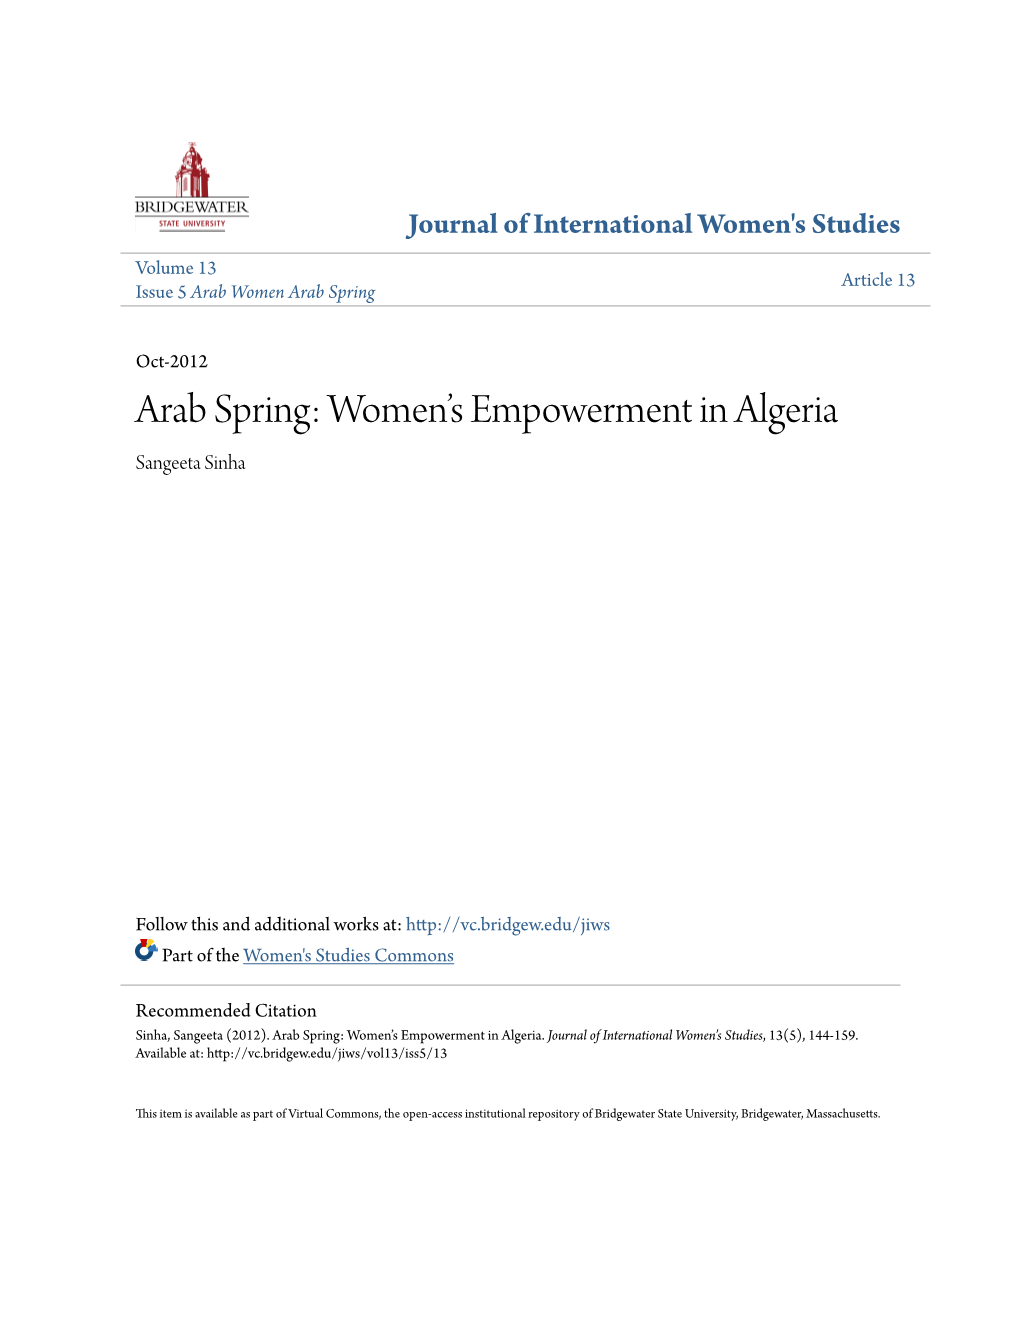 Arab Spring: Women's Empowerment in Algeria